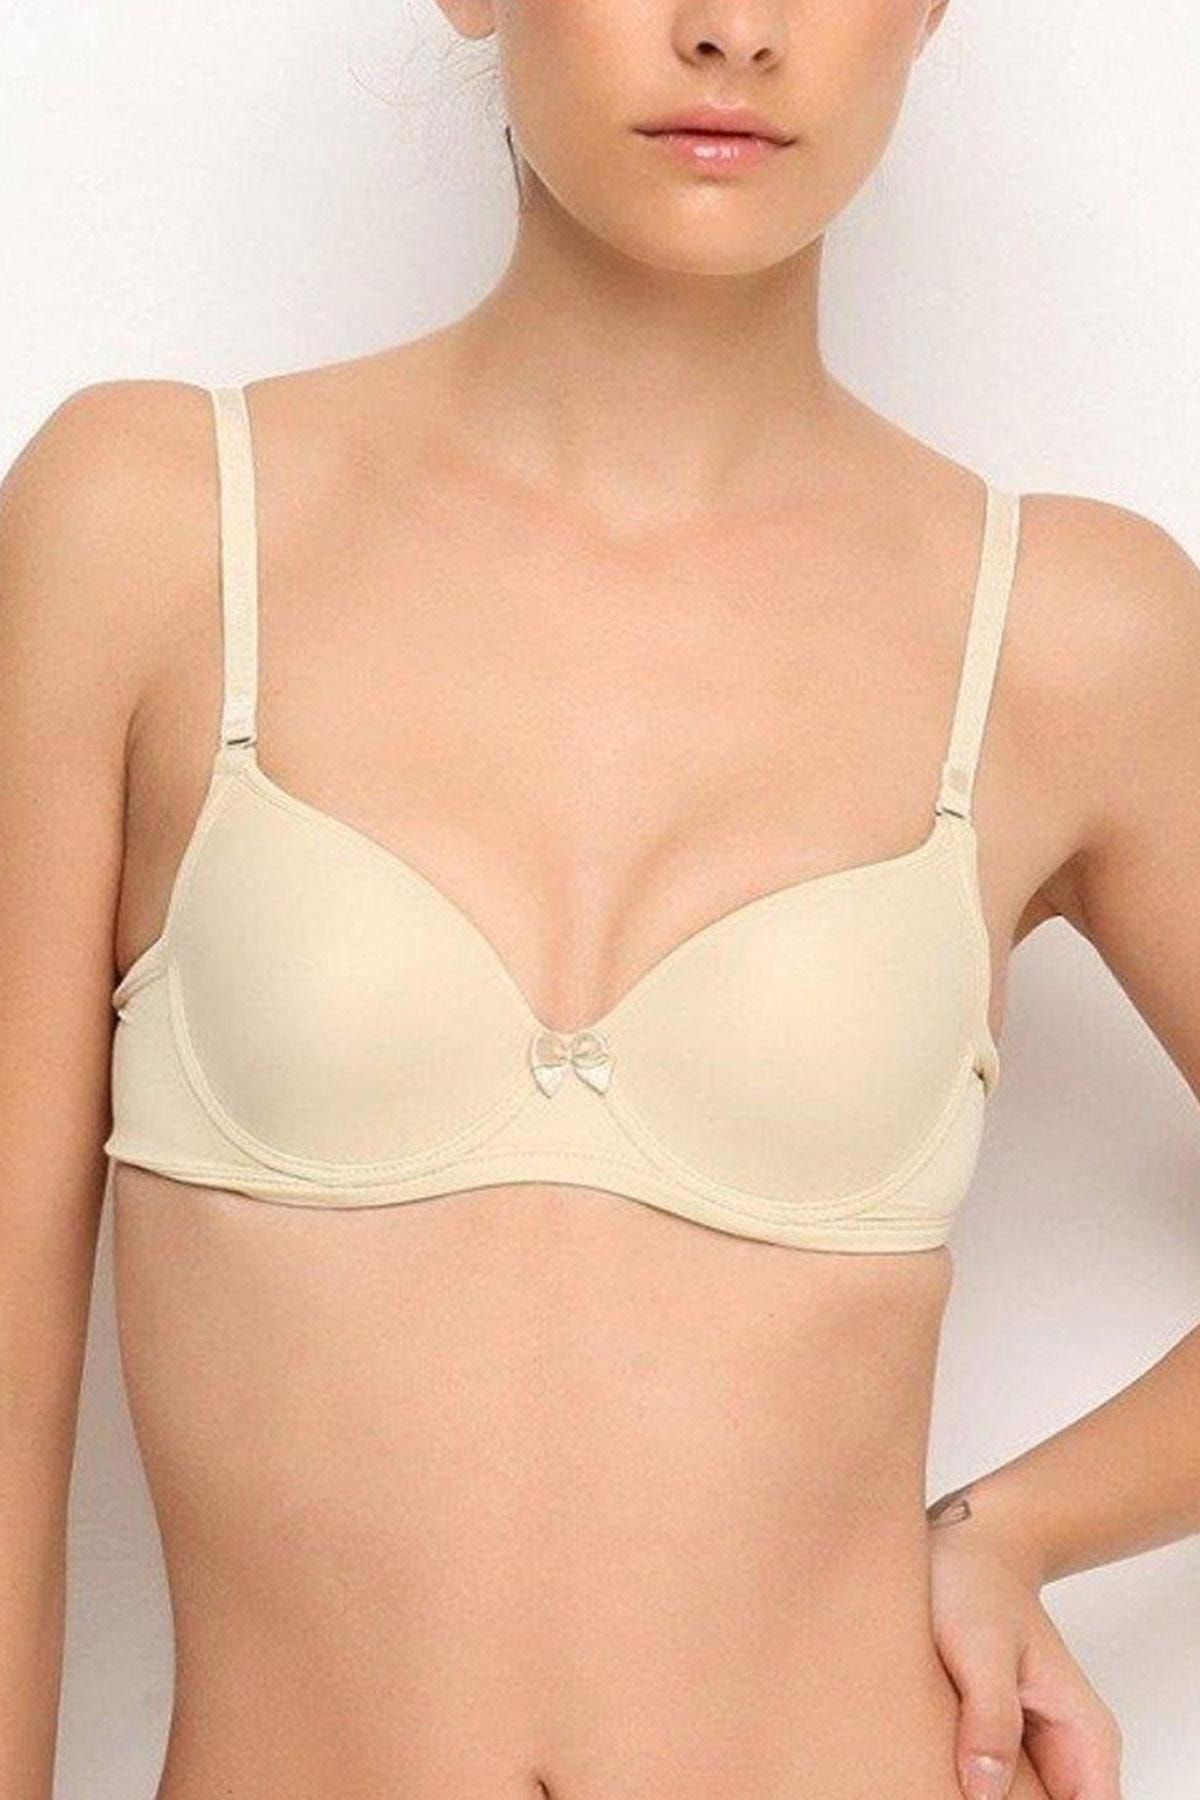 Nurteks Women's Unsupported Bra Soft Touch Transparent Strap - Trendyol